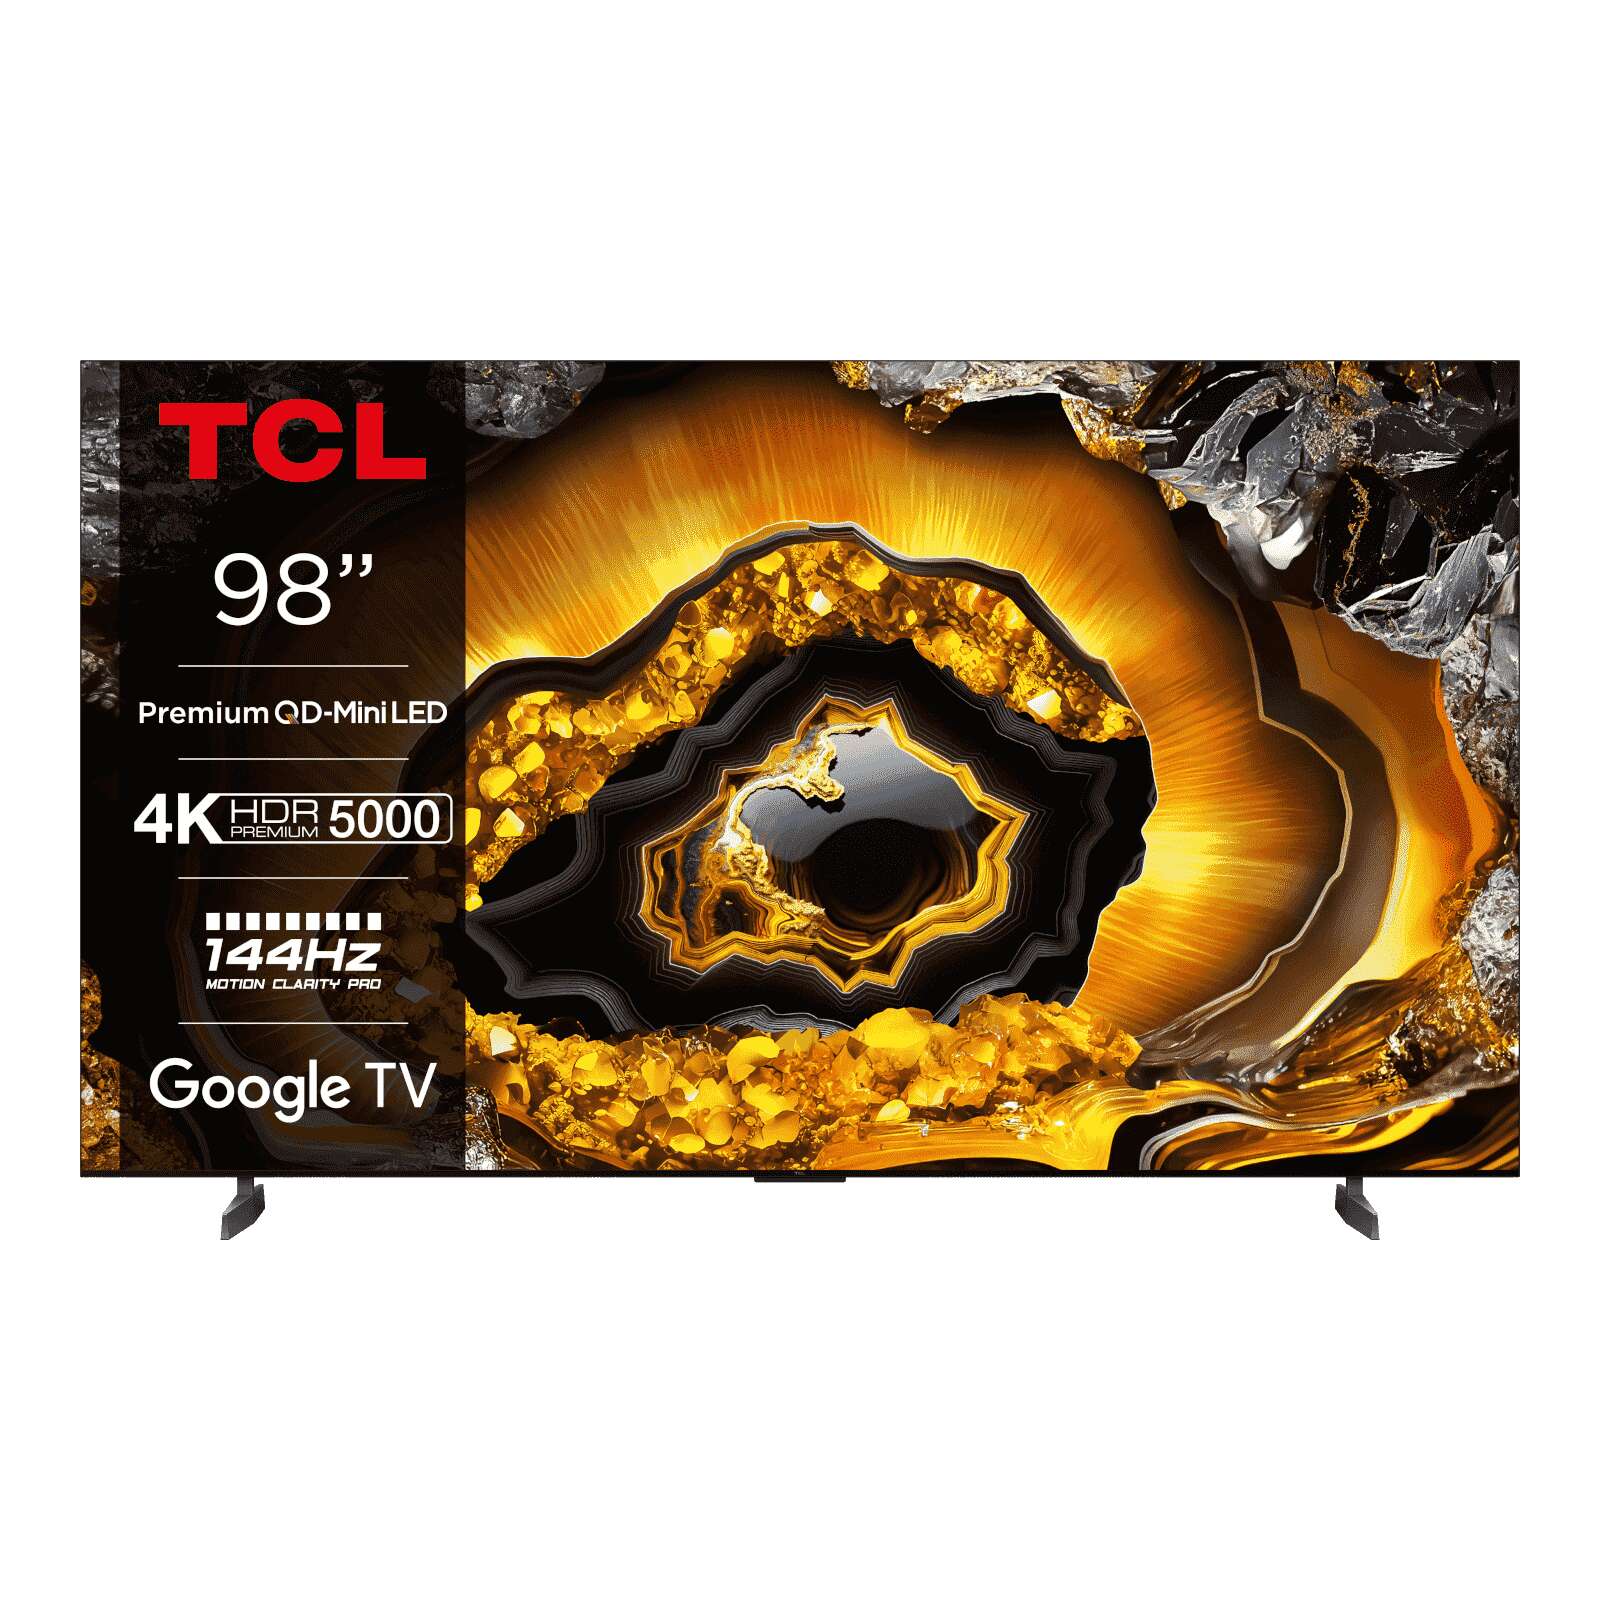 Tcl 98x955 98" 4k qd-mini led tv (98x955)